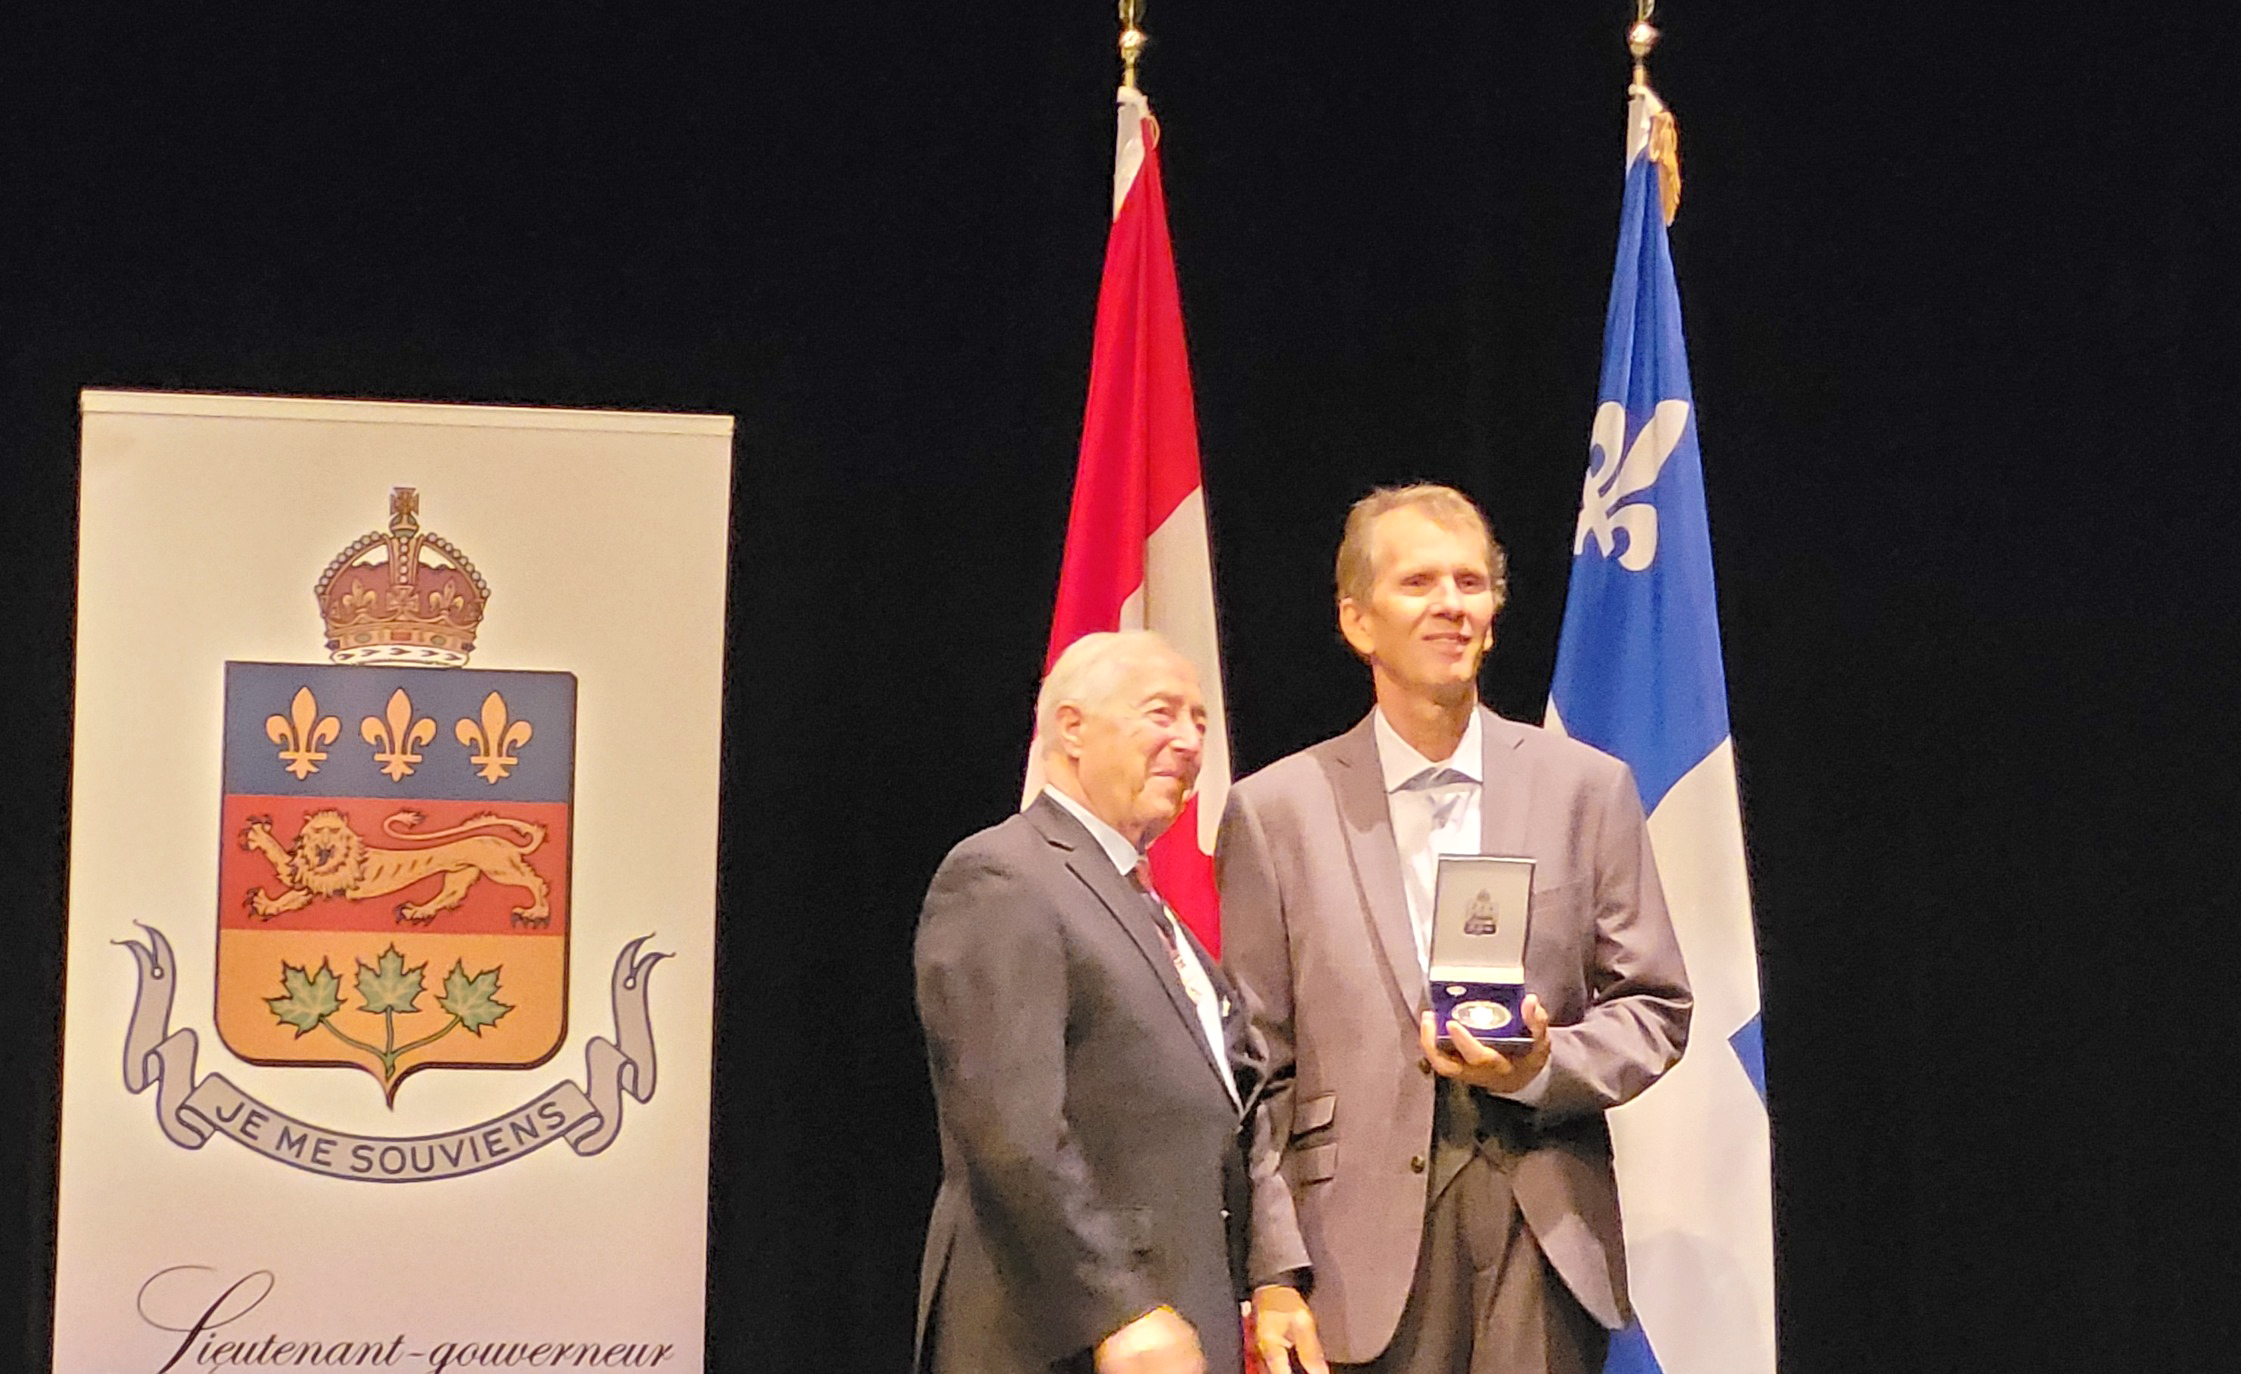 Серебряная медаль губернатора Quebecа, врученна нашему соотечественнику Nicolae Mărgineanu